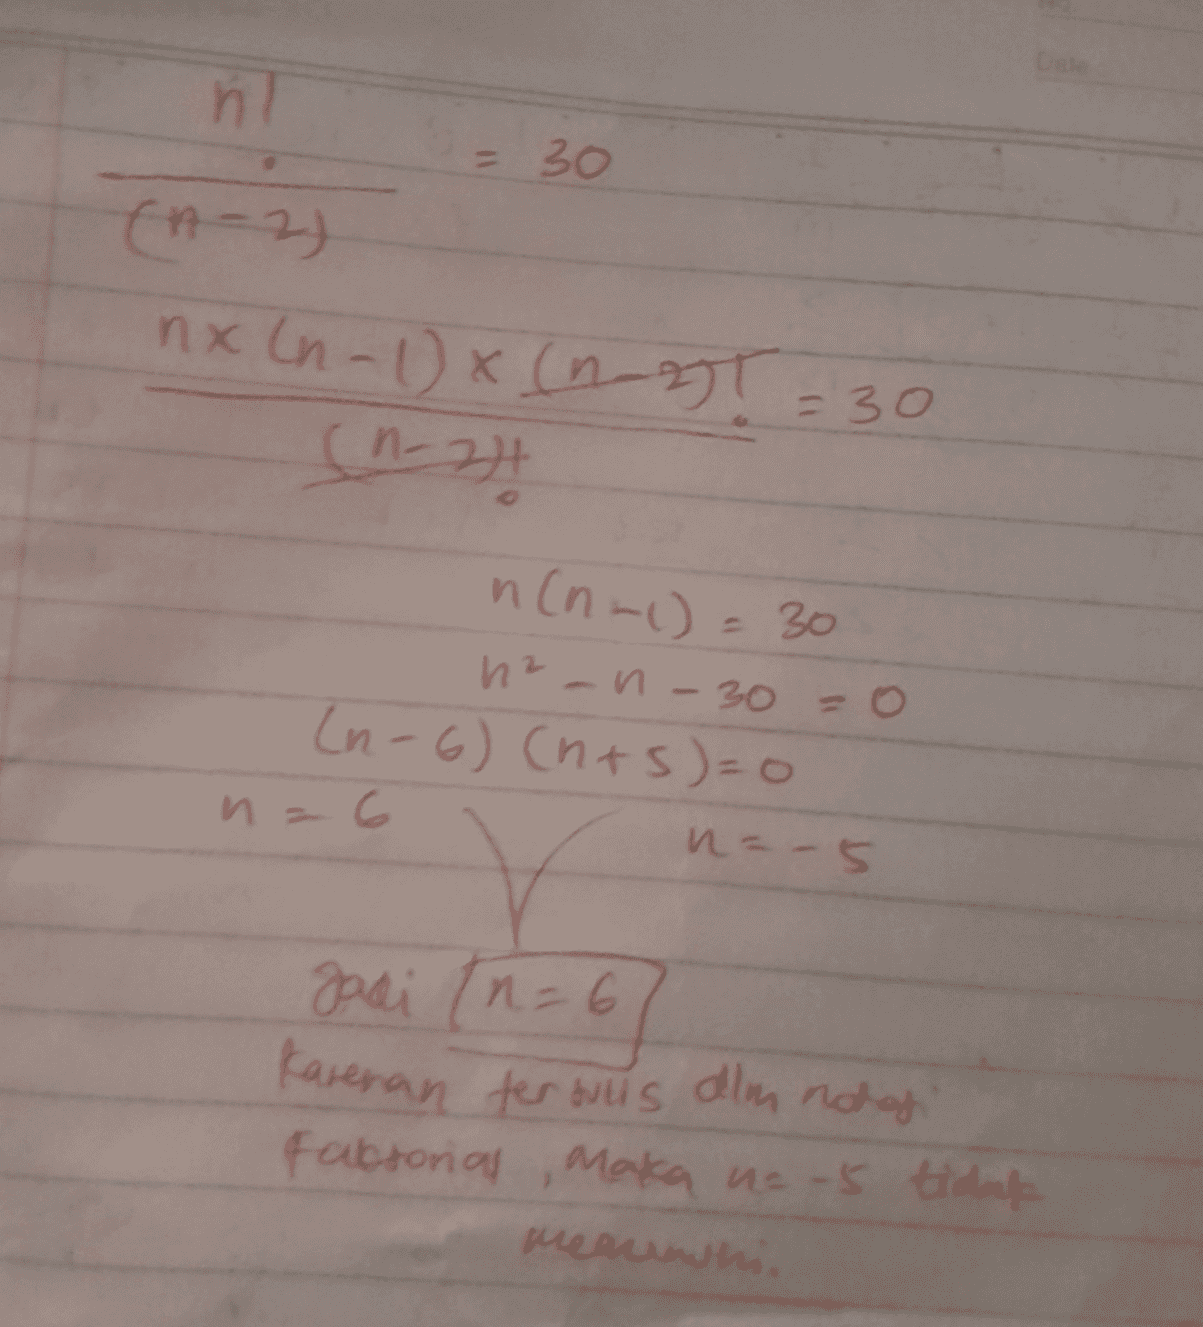 n = 30 (n-2) nx (n-1)x (not=30 (0-2)! n(n-1)= 30 hz-n-300 (n-6) (nts=0 n = 6 n= -5 gadi (n=6 (n=67 Karenan terbulls alm not of Fabtorial, Maka na 5 tidak meannhi. 